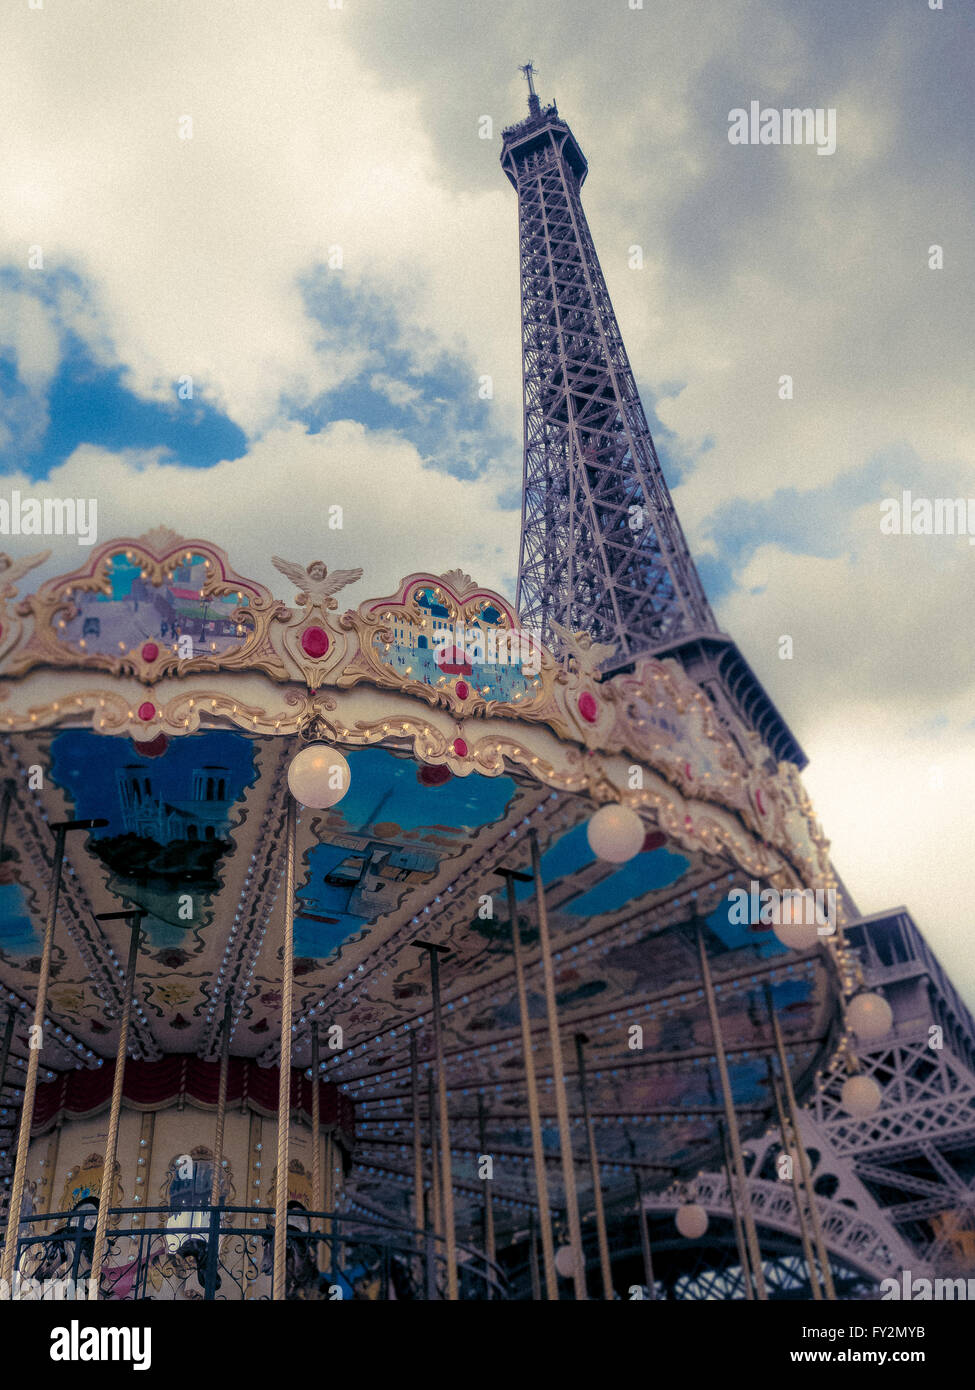 La Tour Eiffel et le carrousel, Paris, France Banque D'Images